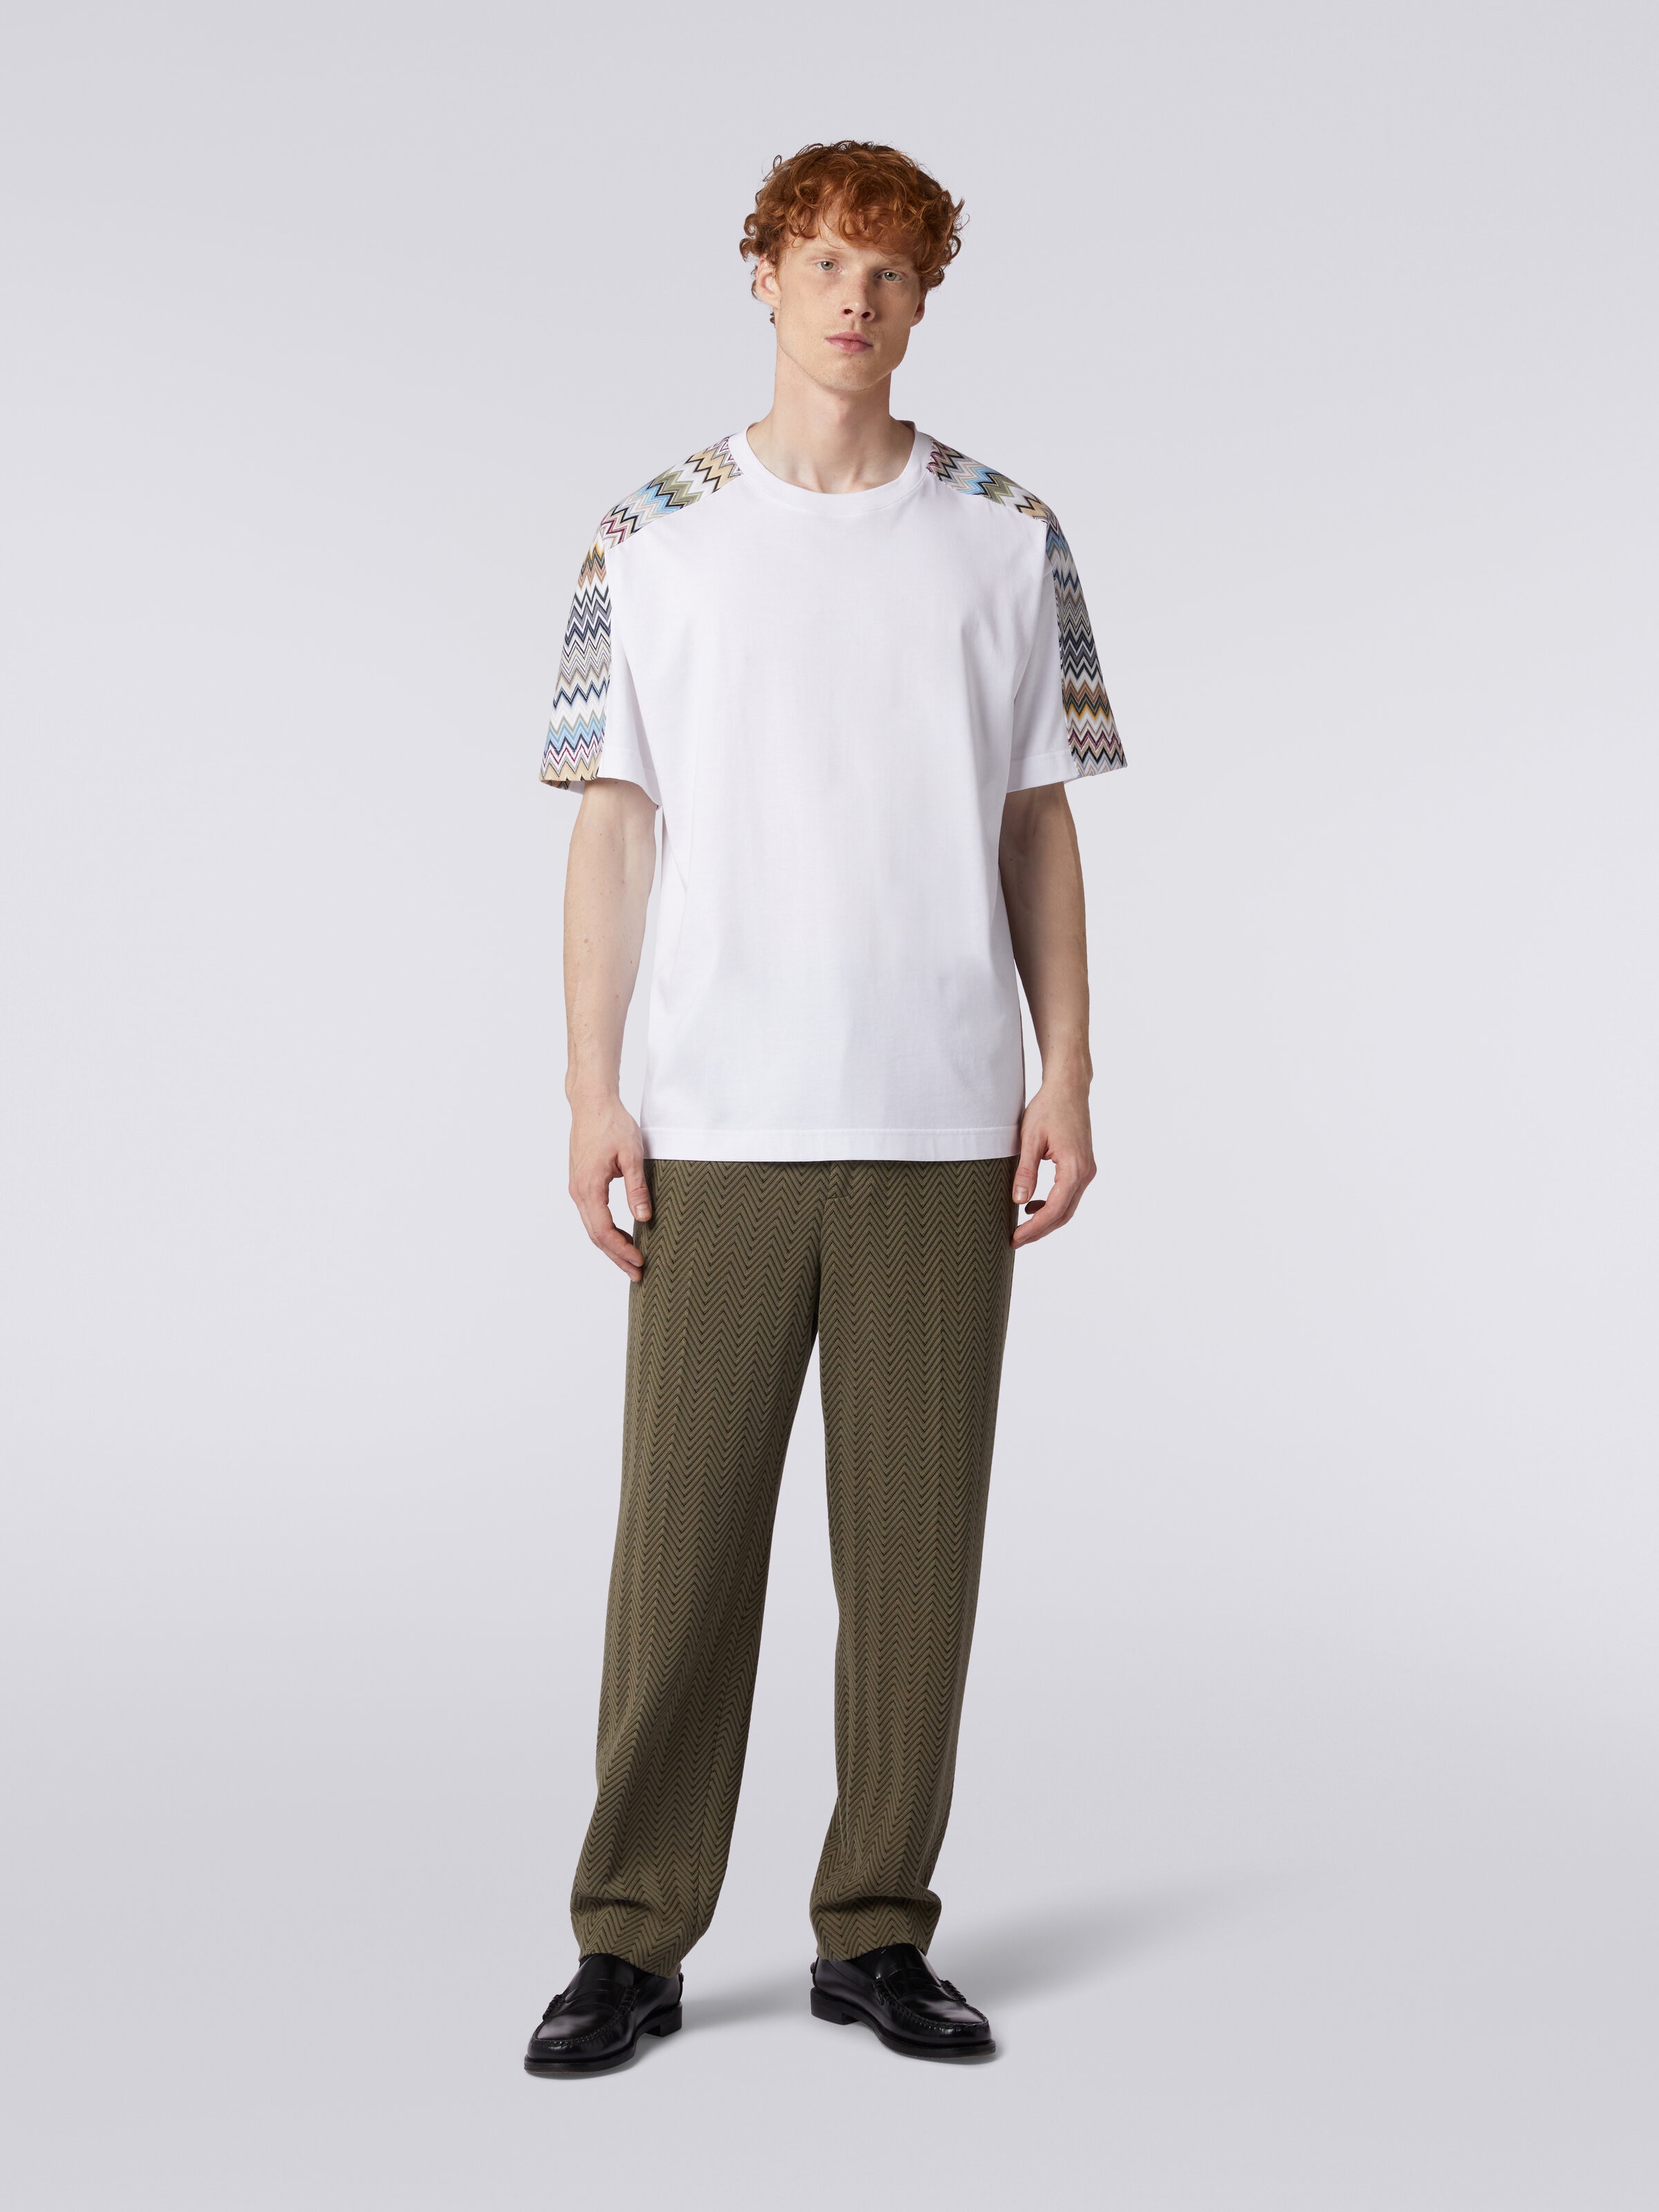 Camiseta de algodón con inserciones zigzag, Multicolor  - 1